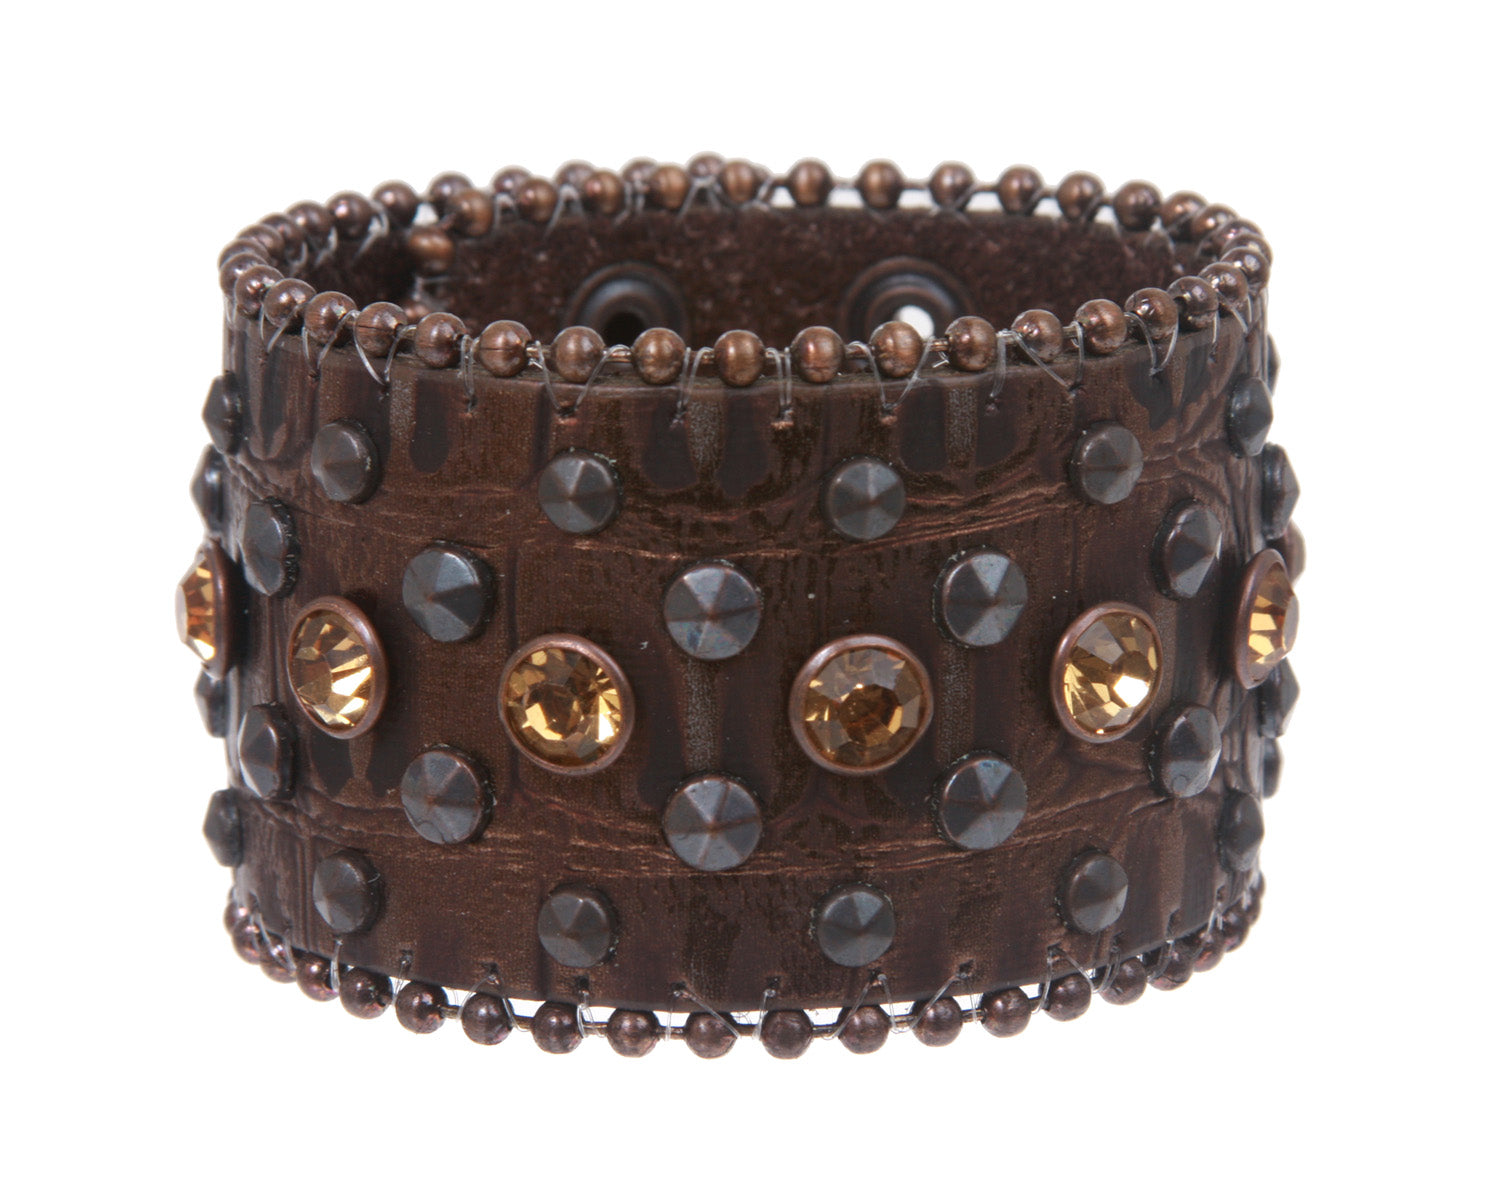 1 3/4" (45 mm) Alligator Rhinestone Studded Leather Wristband Bracelet